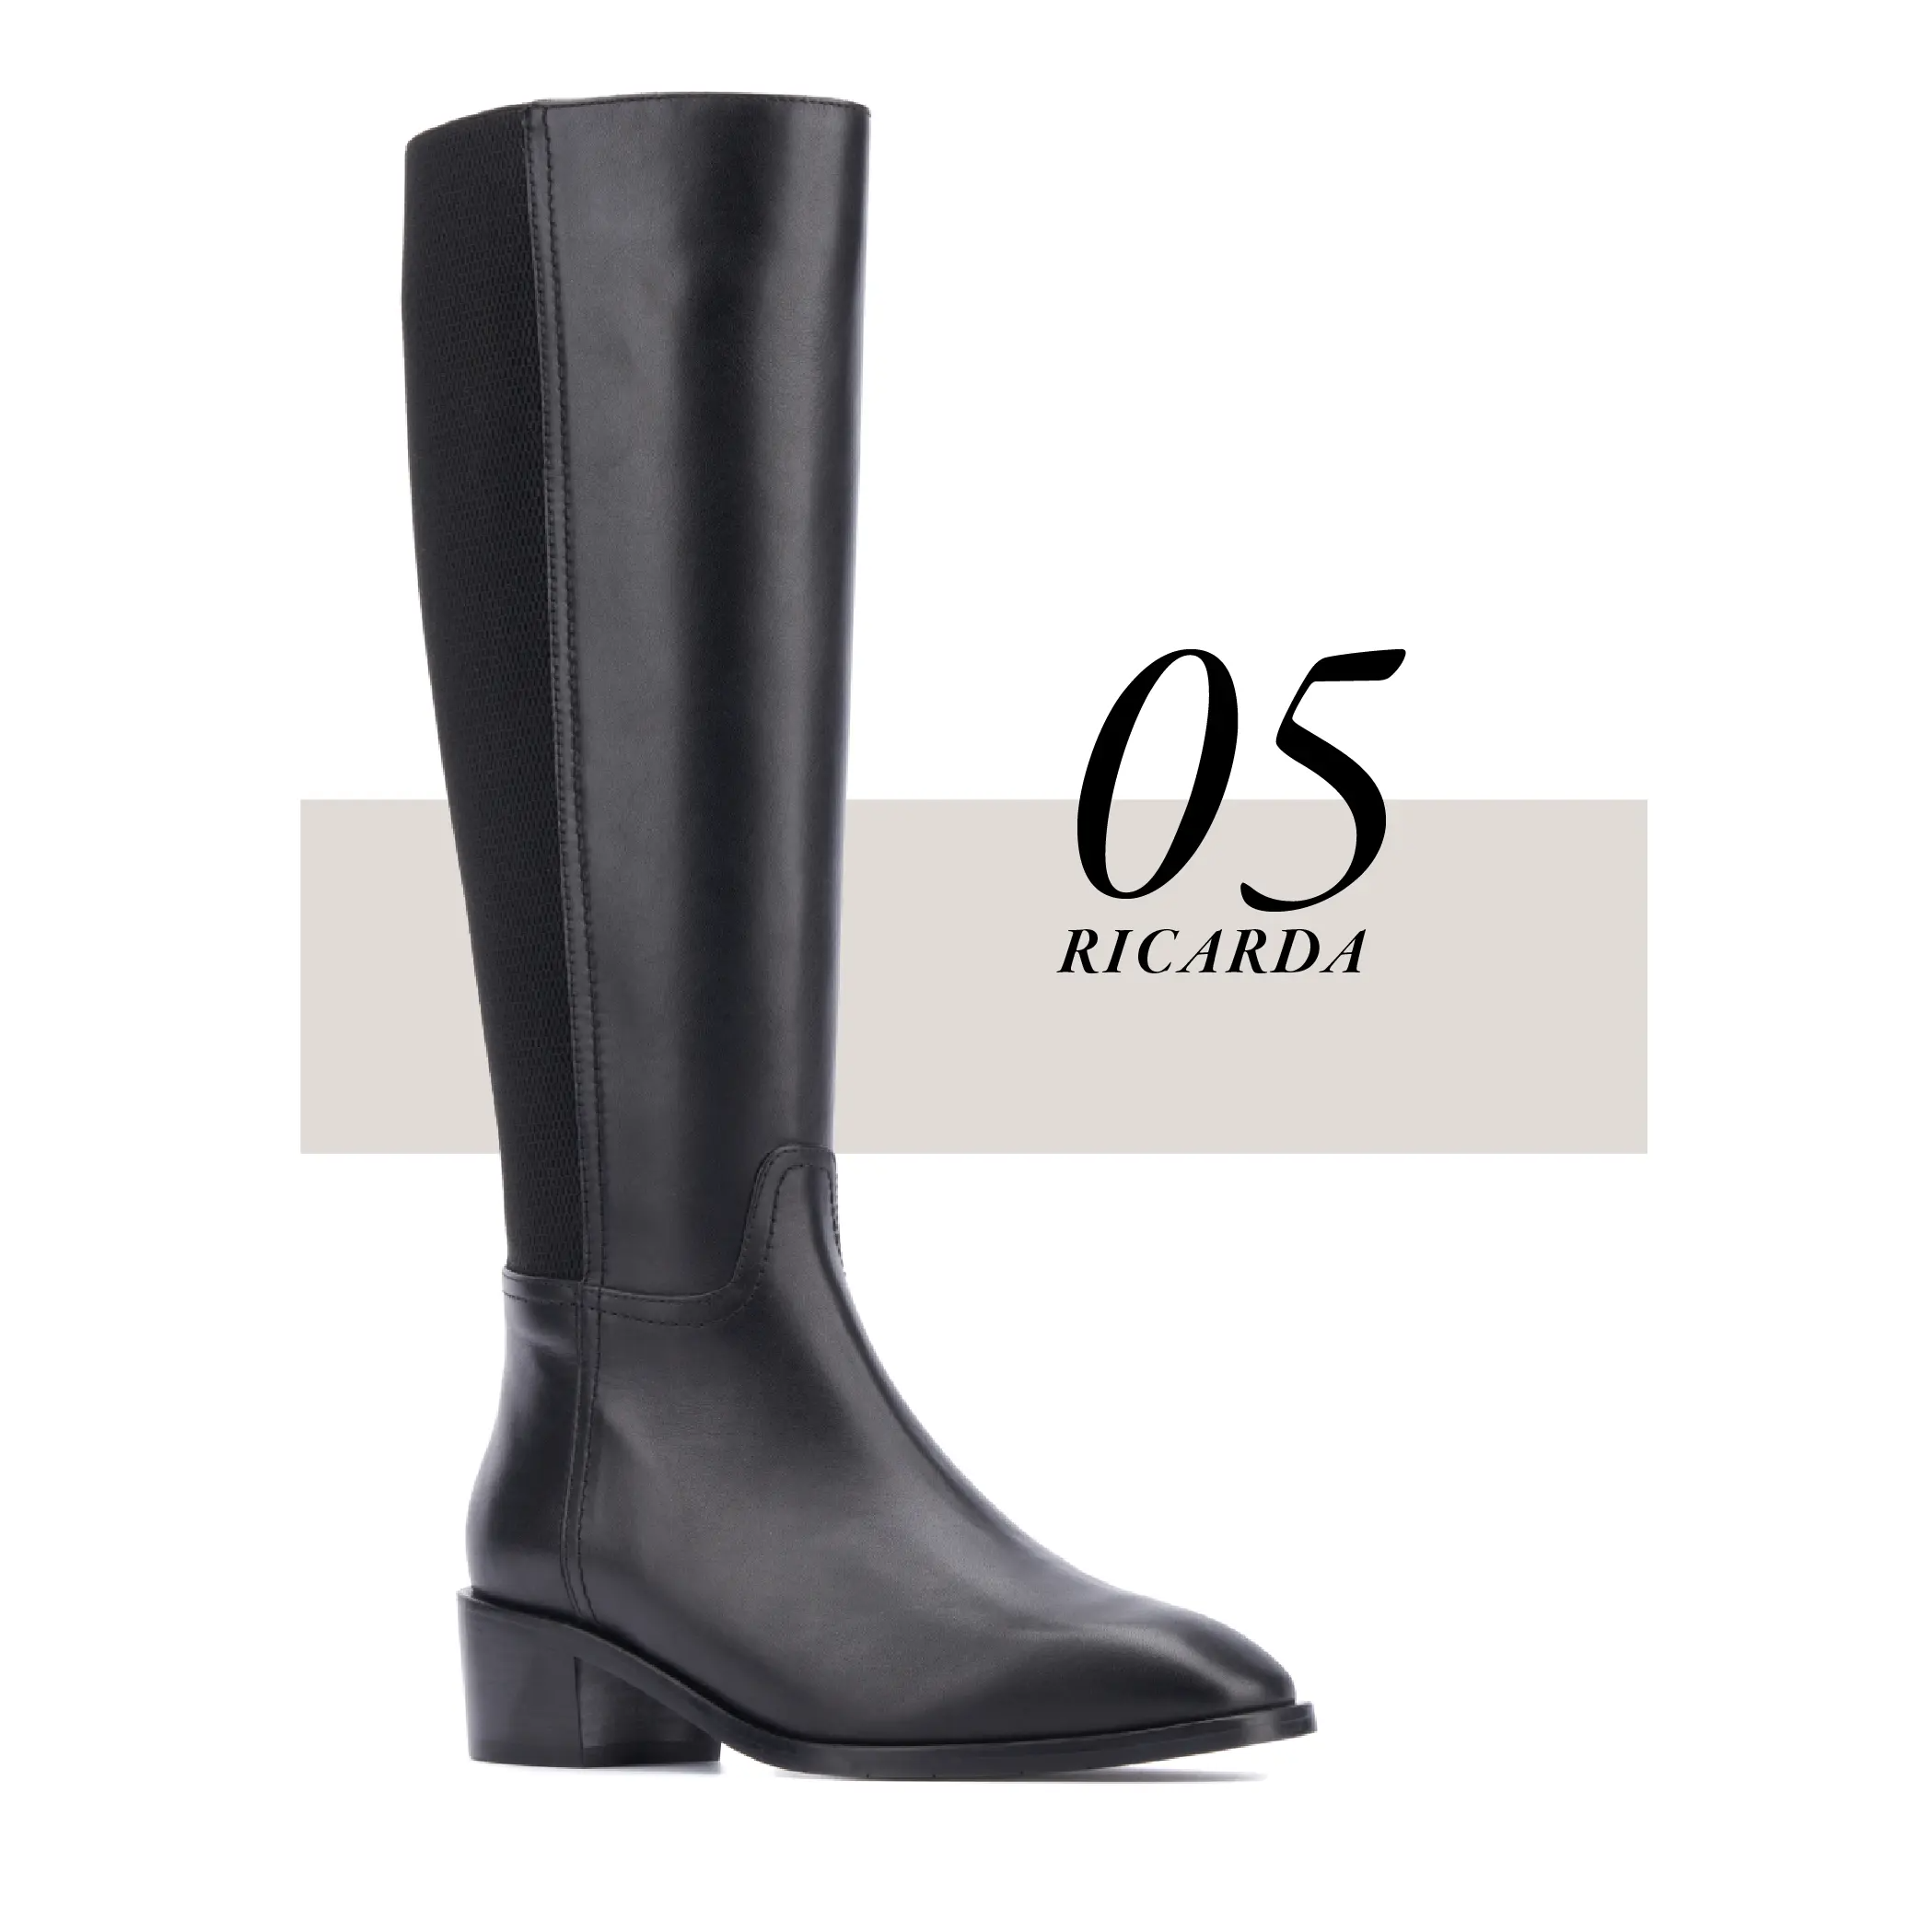 5: The Ricarda boot in Black